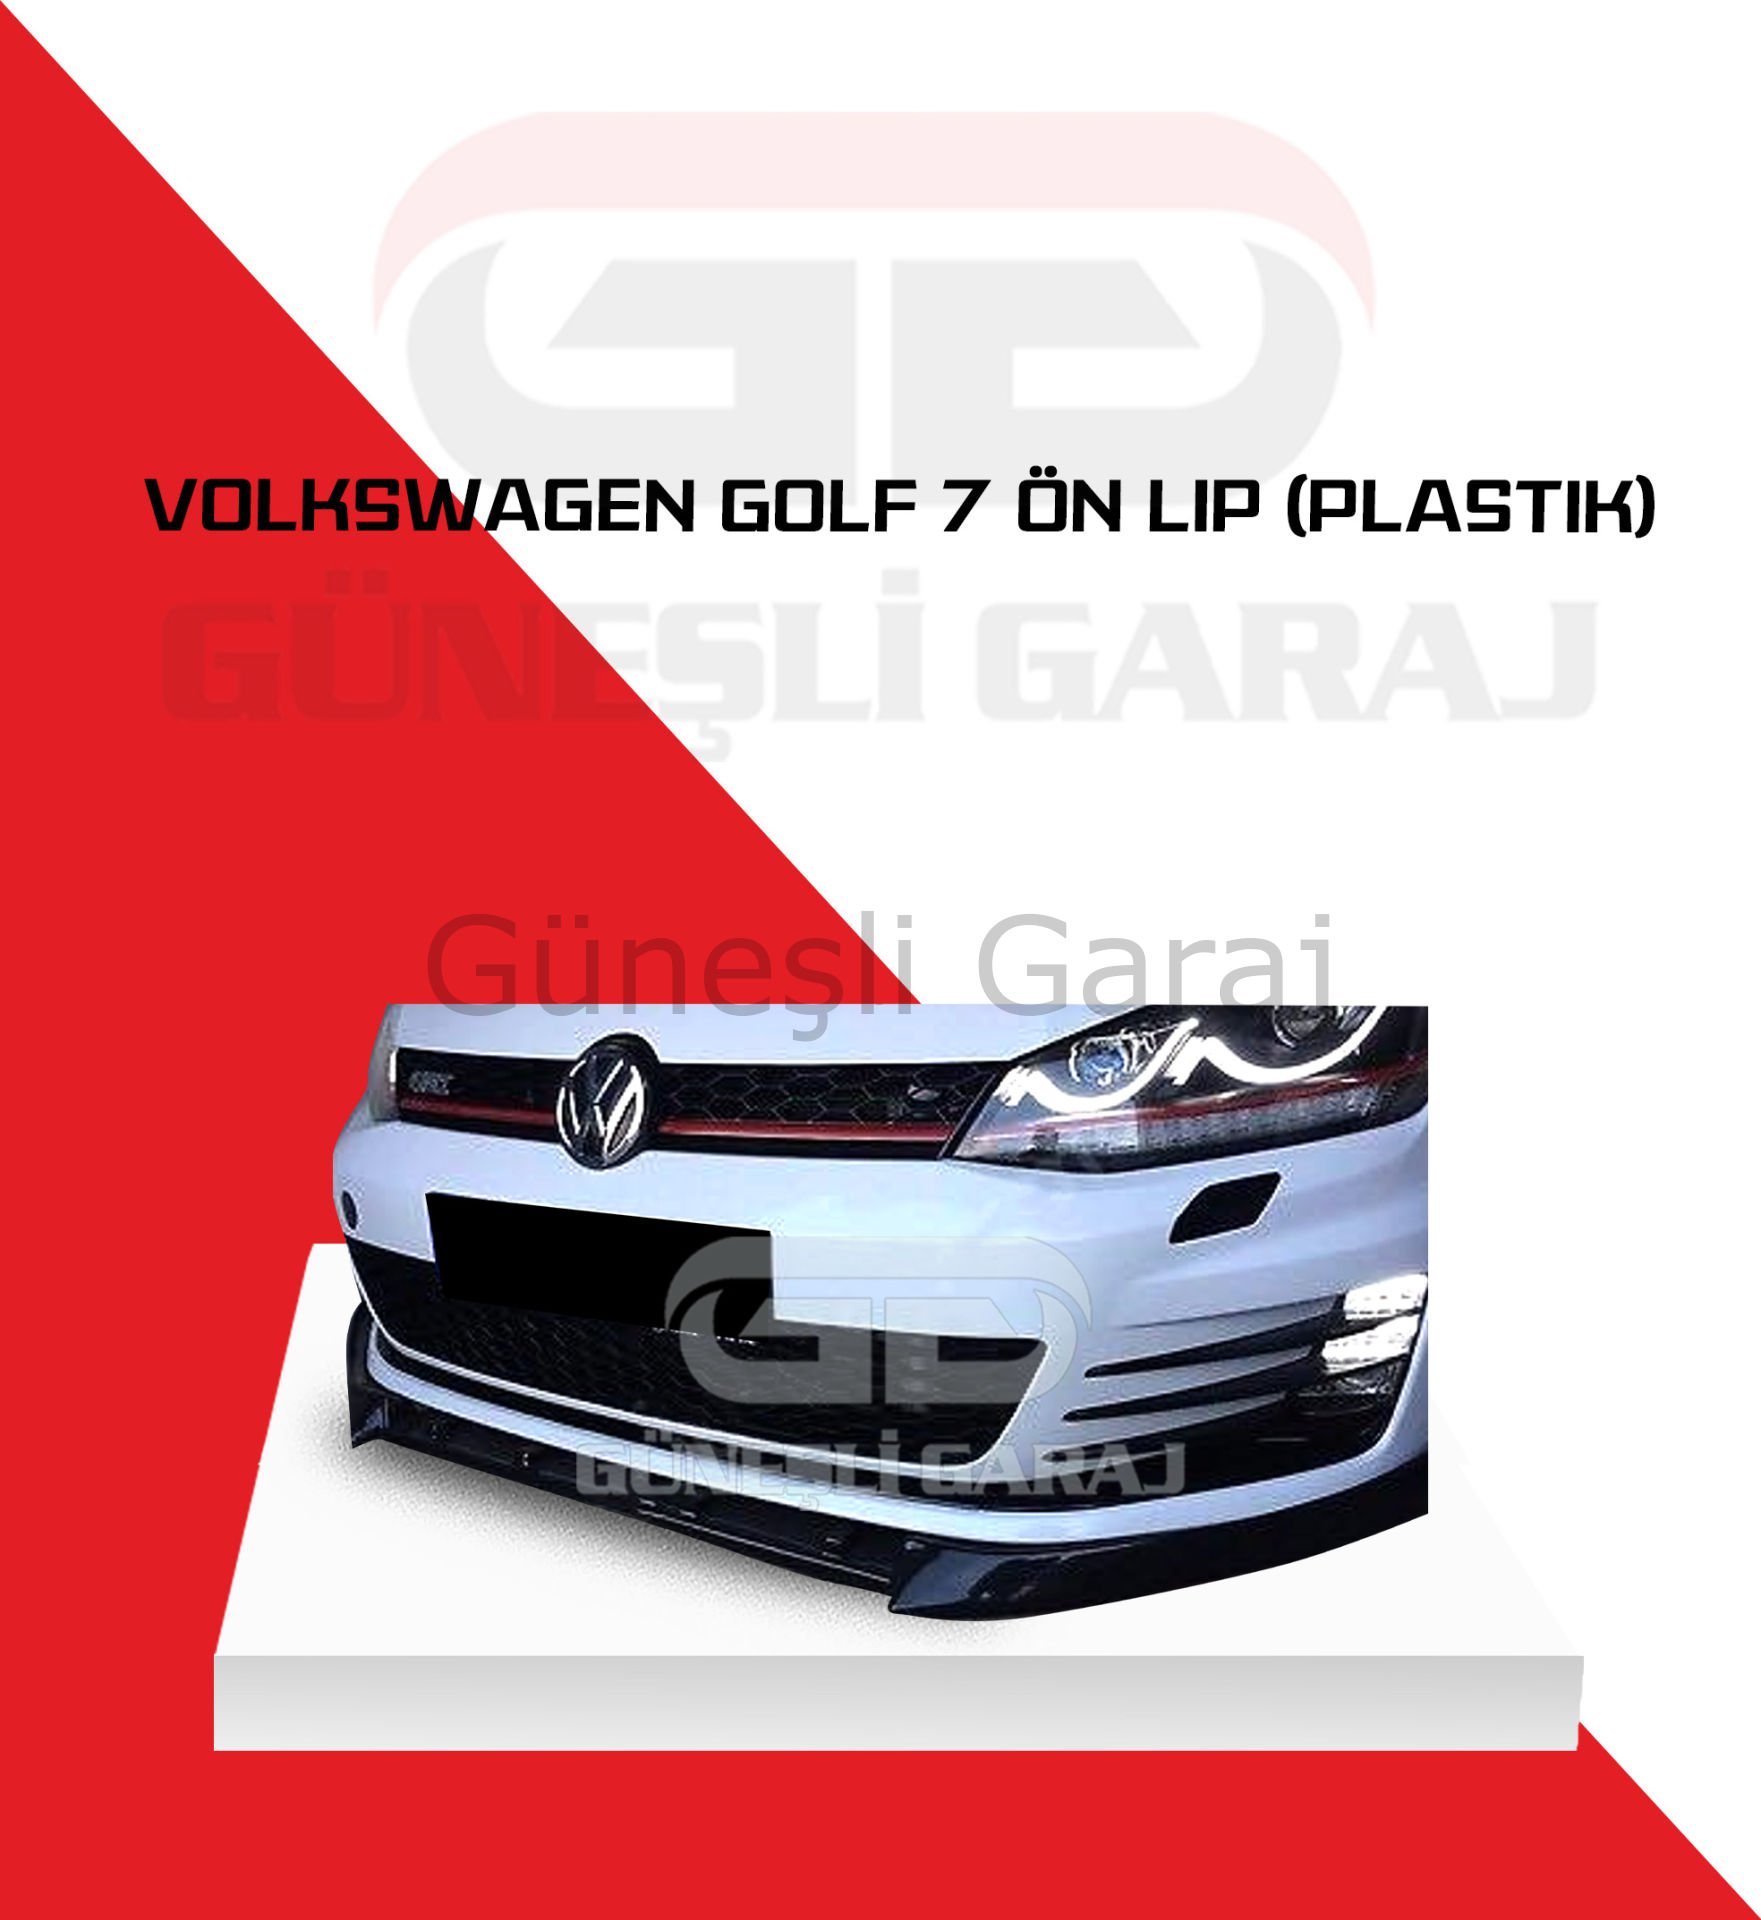 Volkswagen Golf 7 Ön Lip (Plastik)